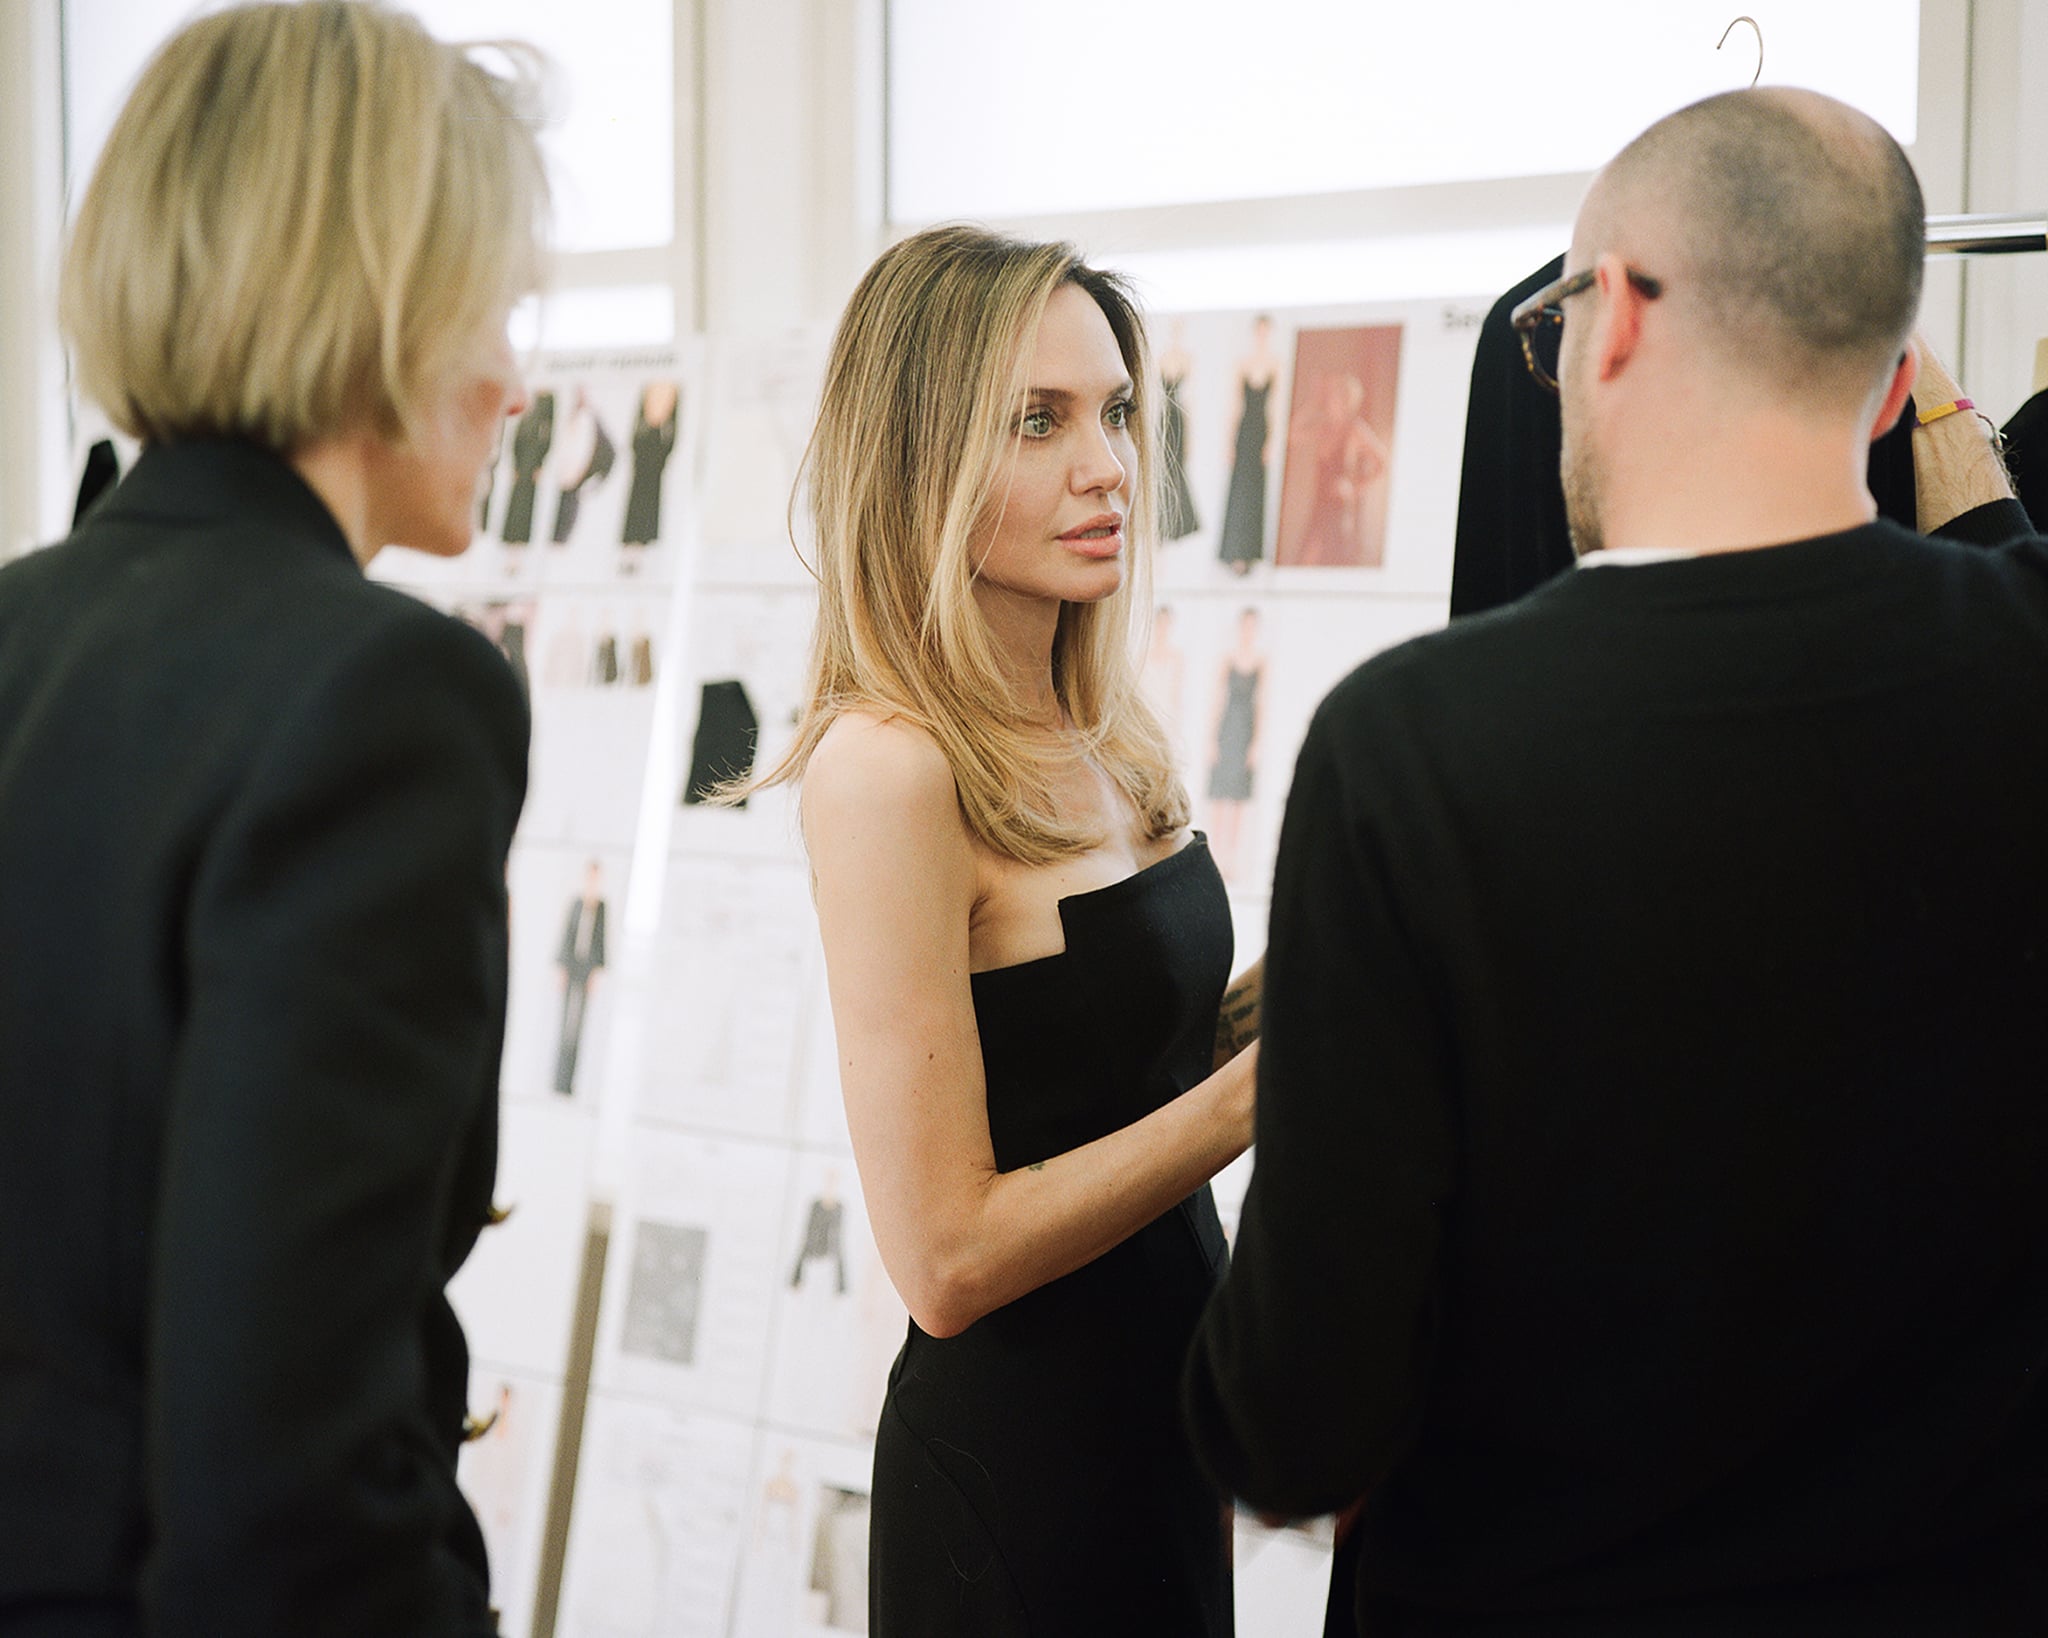 Angelina Jolie's Blond Hair in Chloé x Atelier Jolie Photos